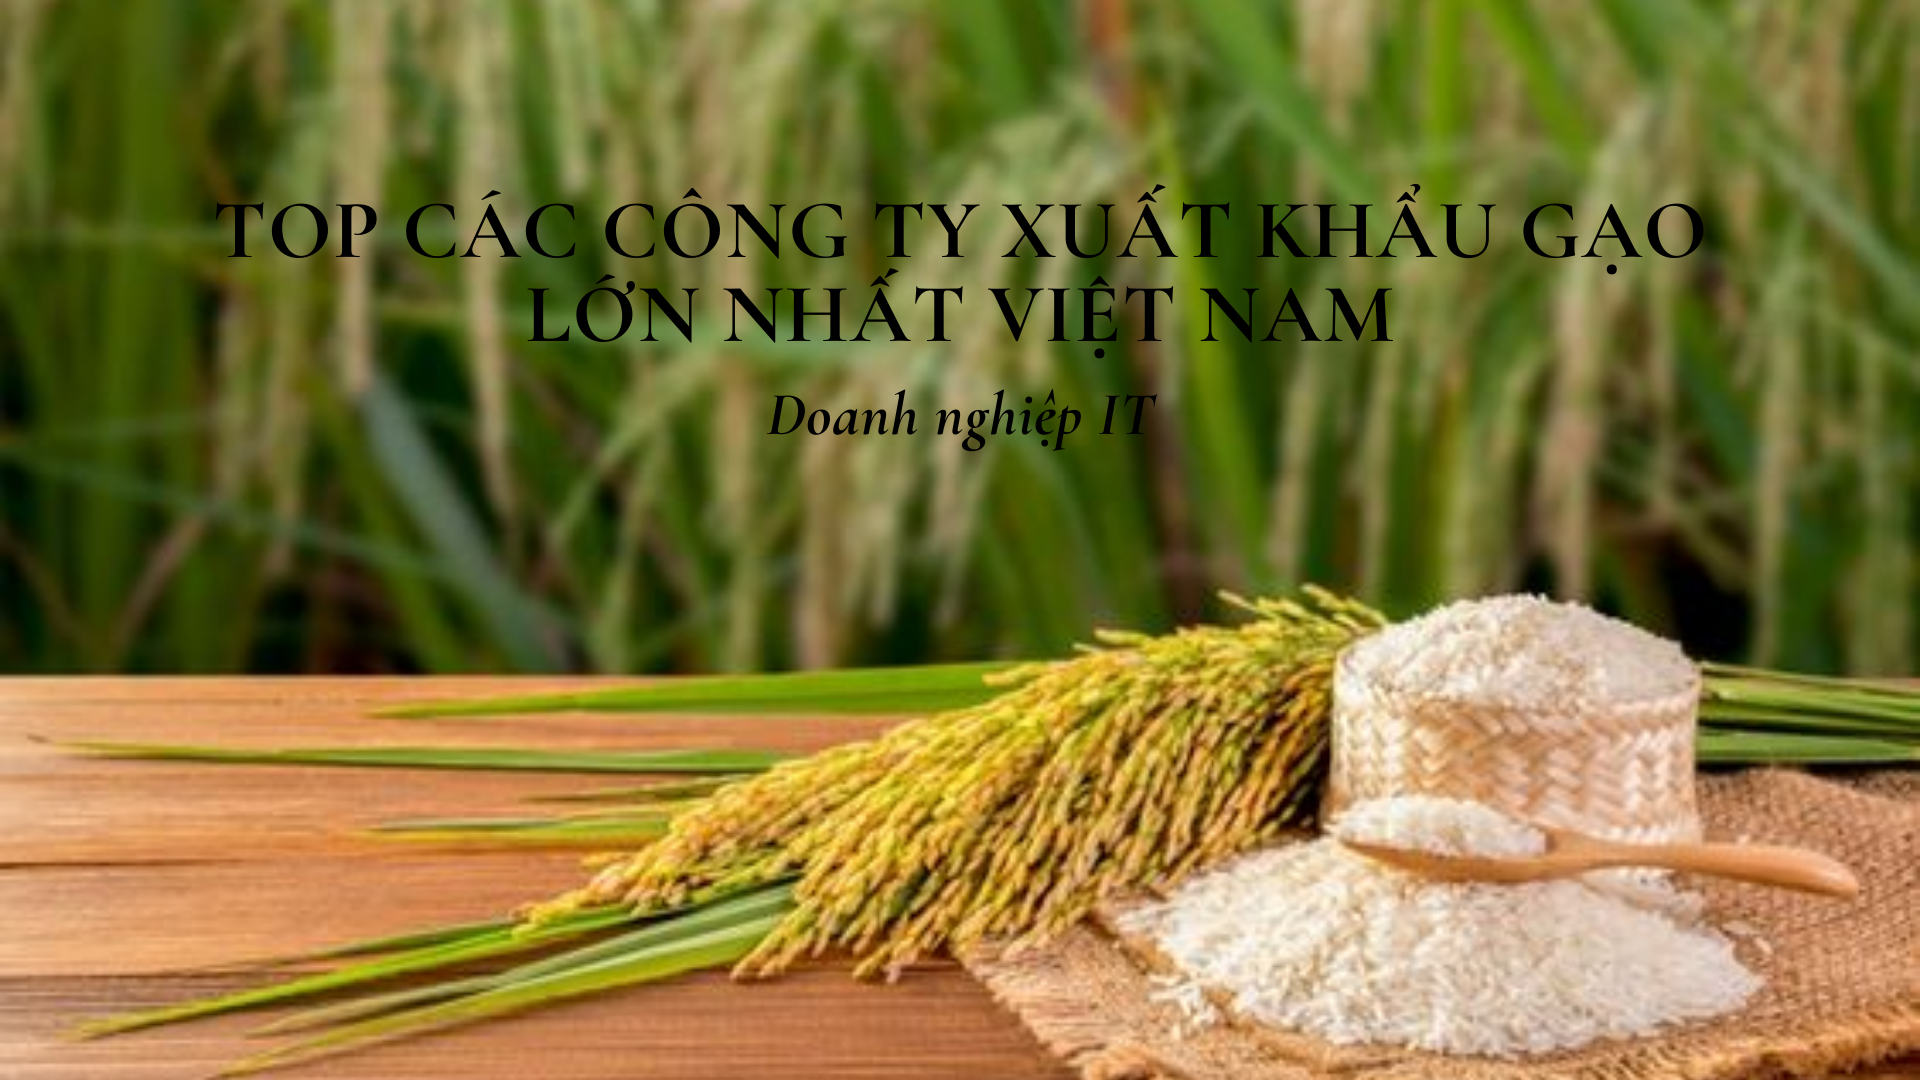 Top các công ty xuất khẩu gạo lớn nhất Việt Nam